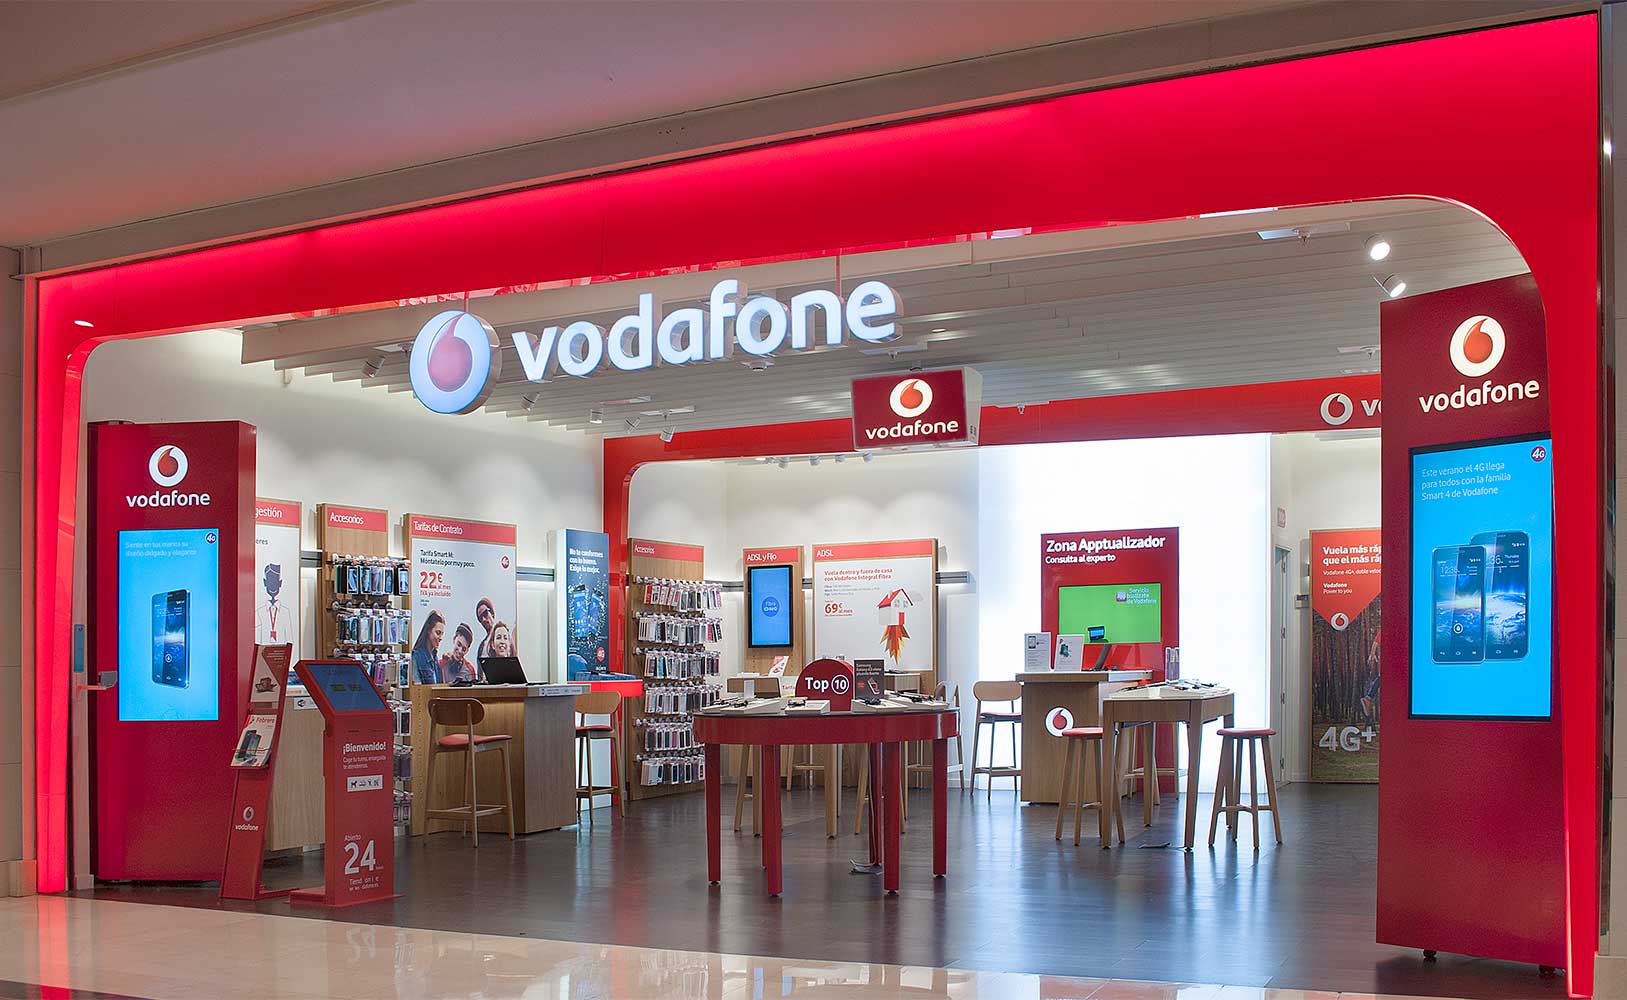 Interior de tienda Vodafone, comunicación visual fundamental para atraer al consumidor.